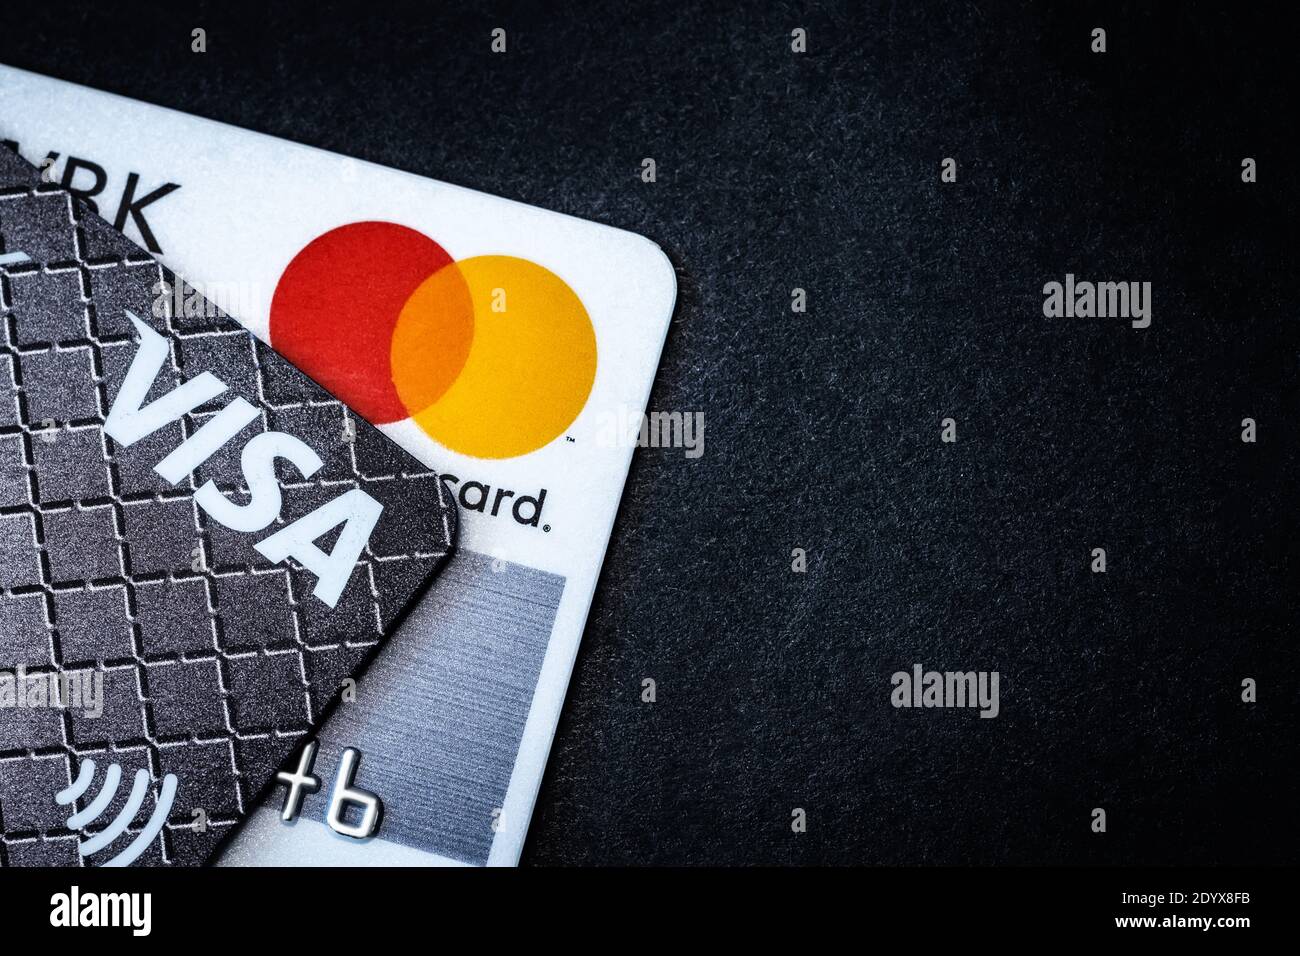 Kiev, Ucraina - 03 giugno 2020: Carte di credito Visa e Mastercard su nero con spazio di copia Foto Stock